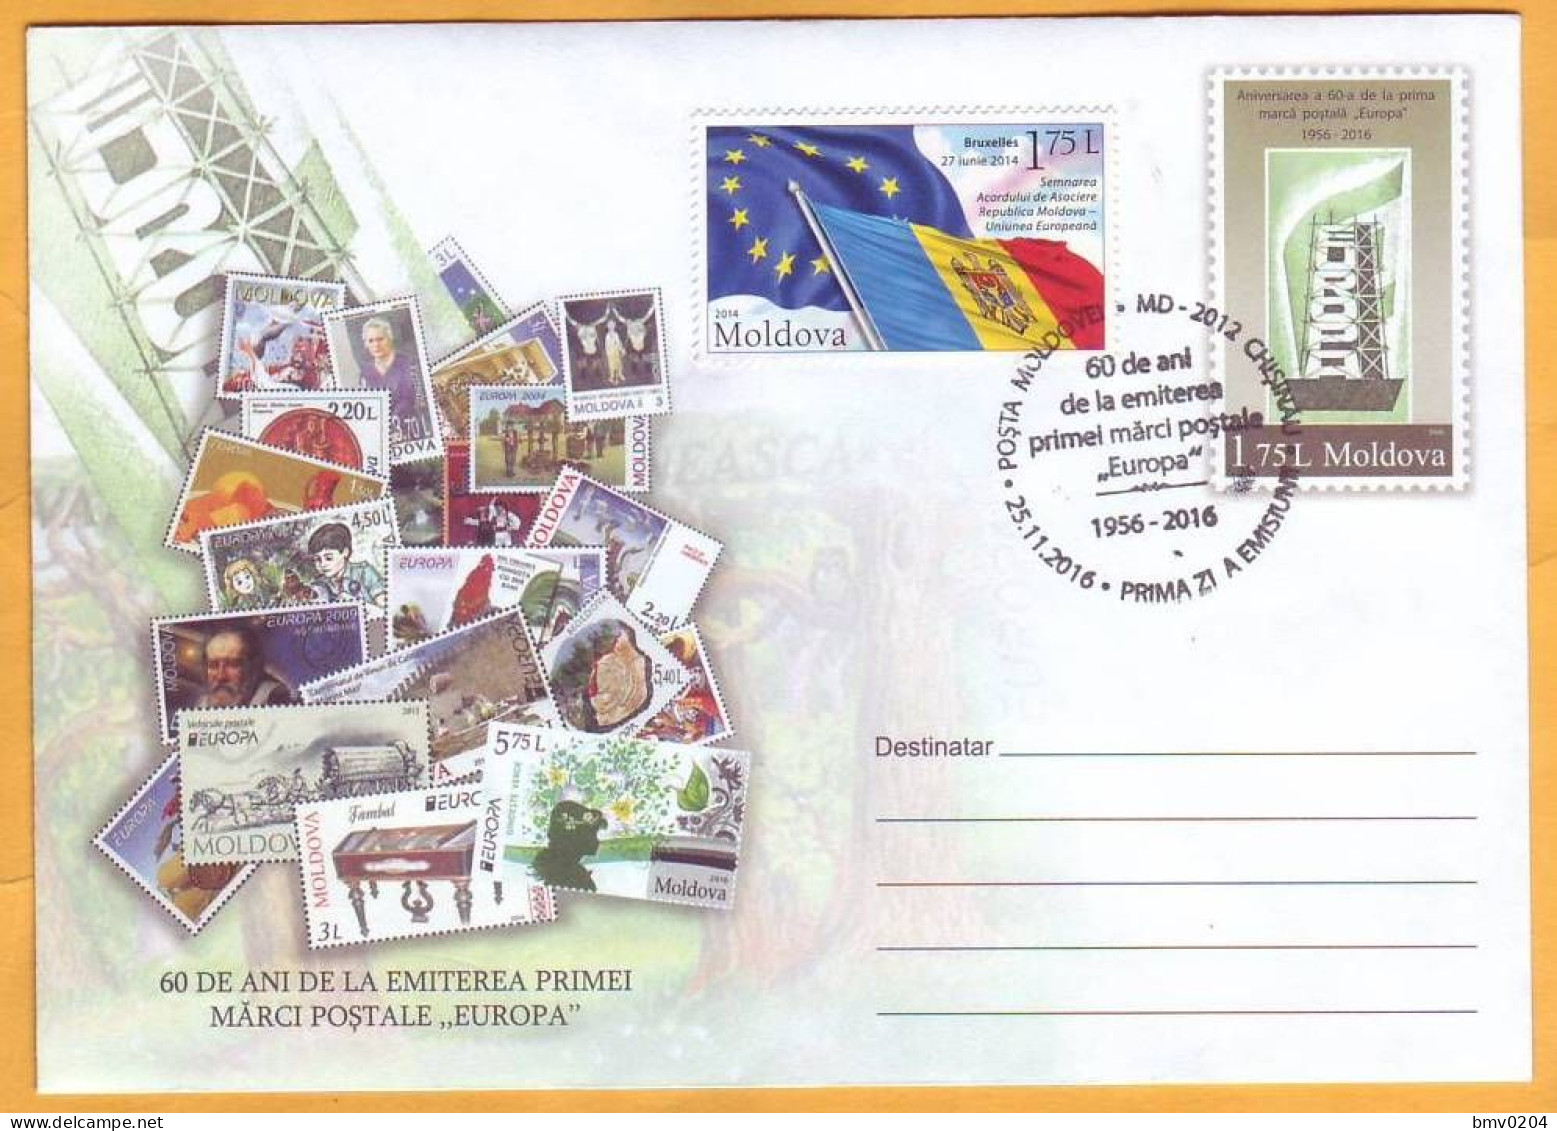 2016 Moldova Moldavie Moldau 60 Years. FDC  The First Postage Stamps "EUROPA - CEPT". Envelope - Moldavia